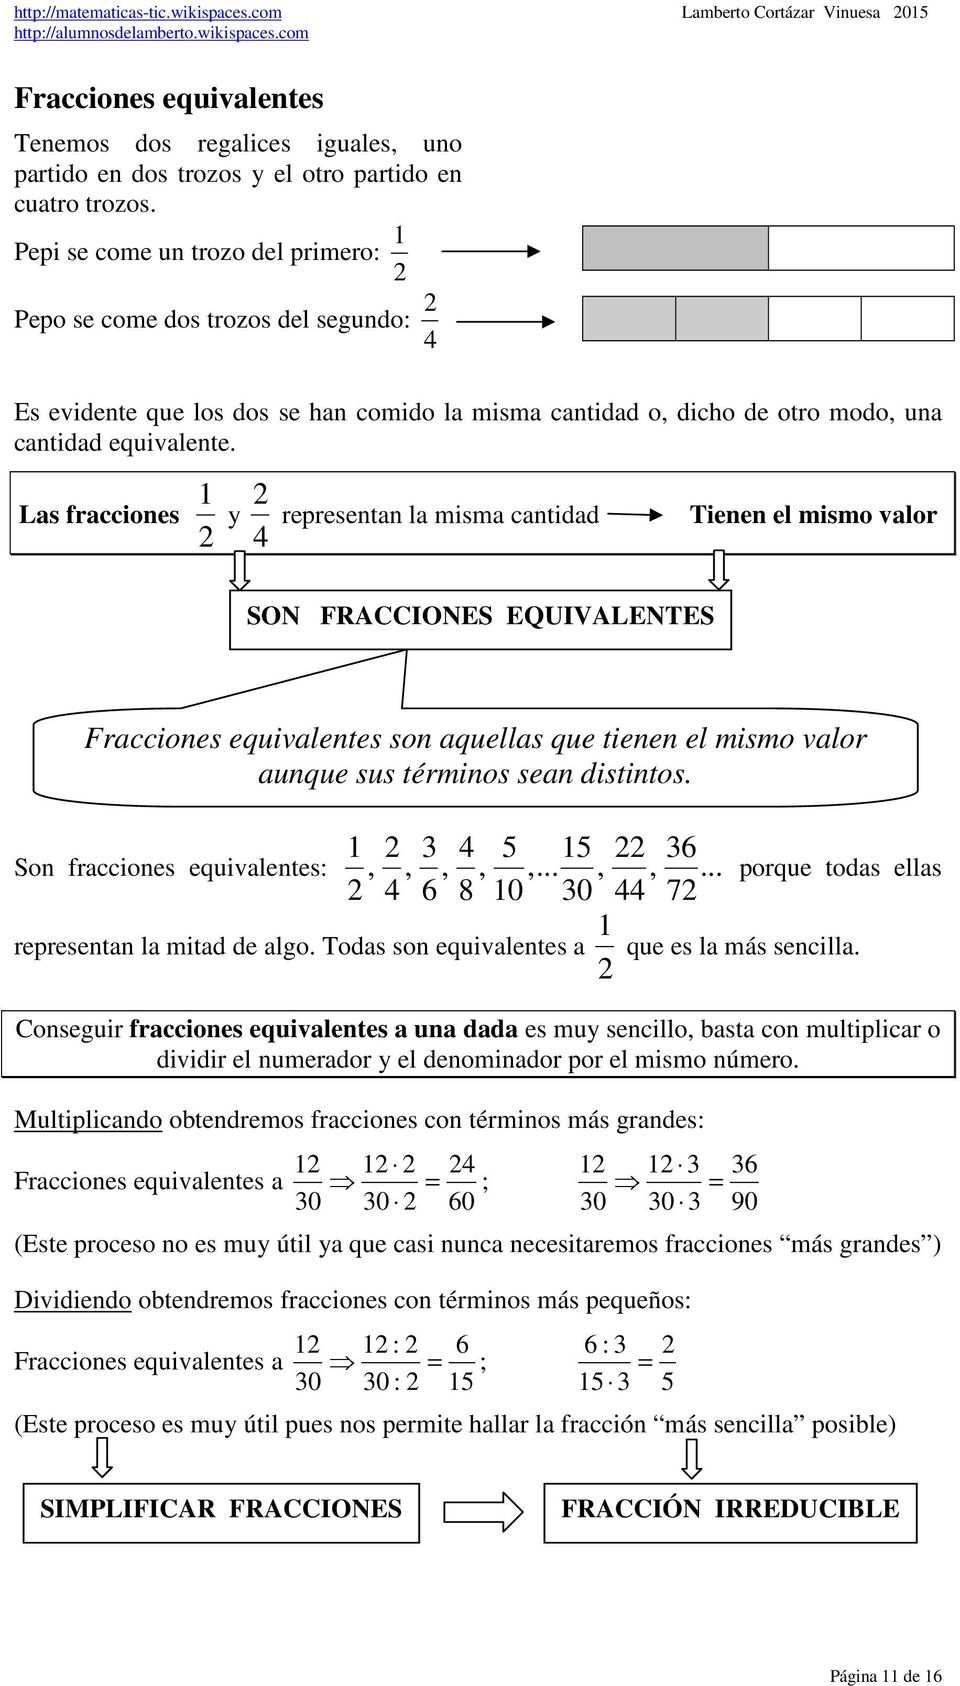 Las fracciones y representan la misma cantidad Tienen el mismo valor SON FRACCIONES EQUIVALENTES Fracciones equivalentes son aquellas que tienen el mismo valor aunque sus términos sean distintos.